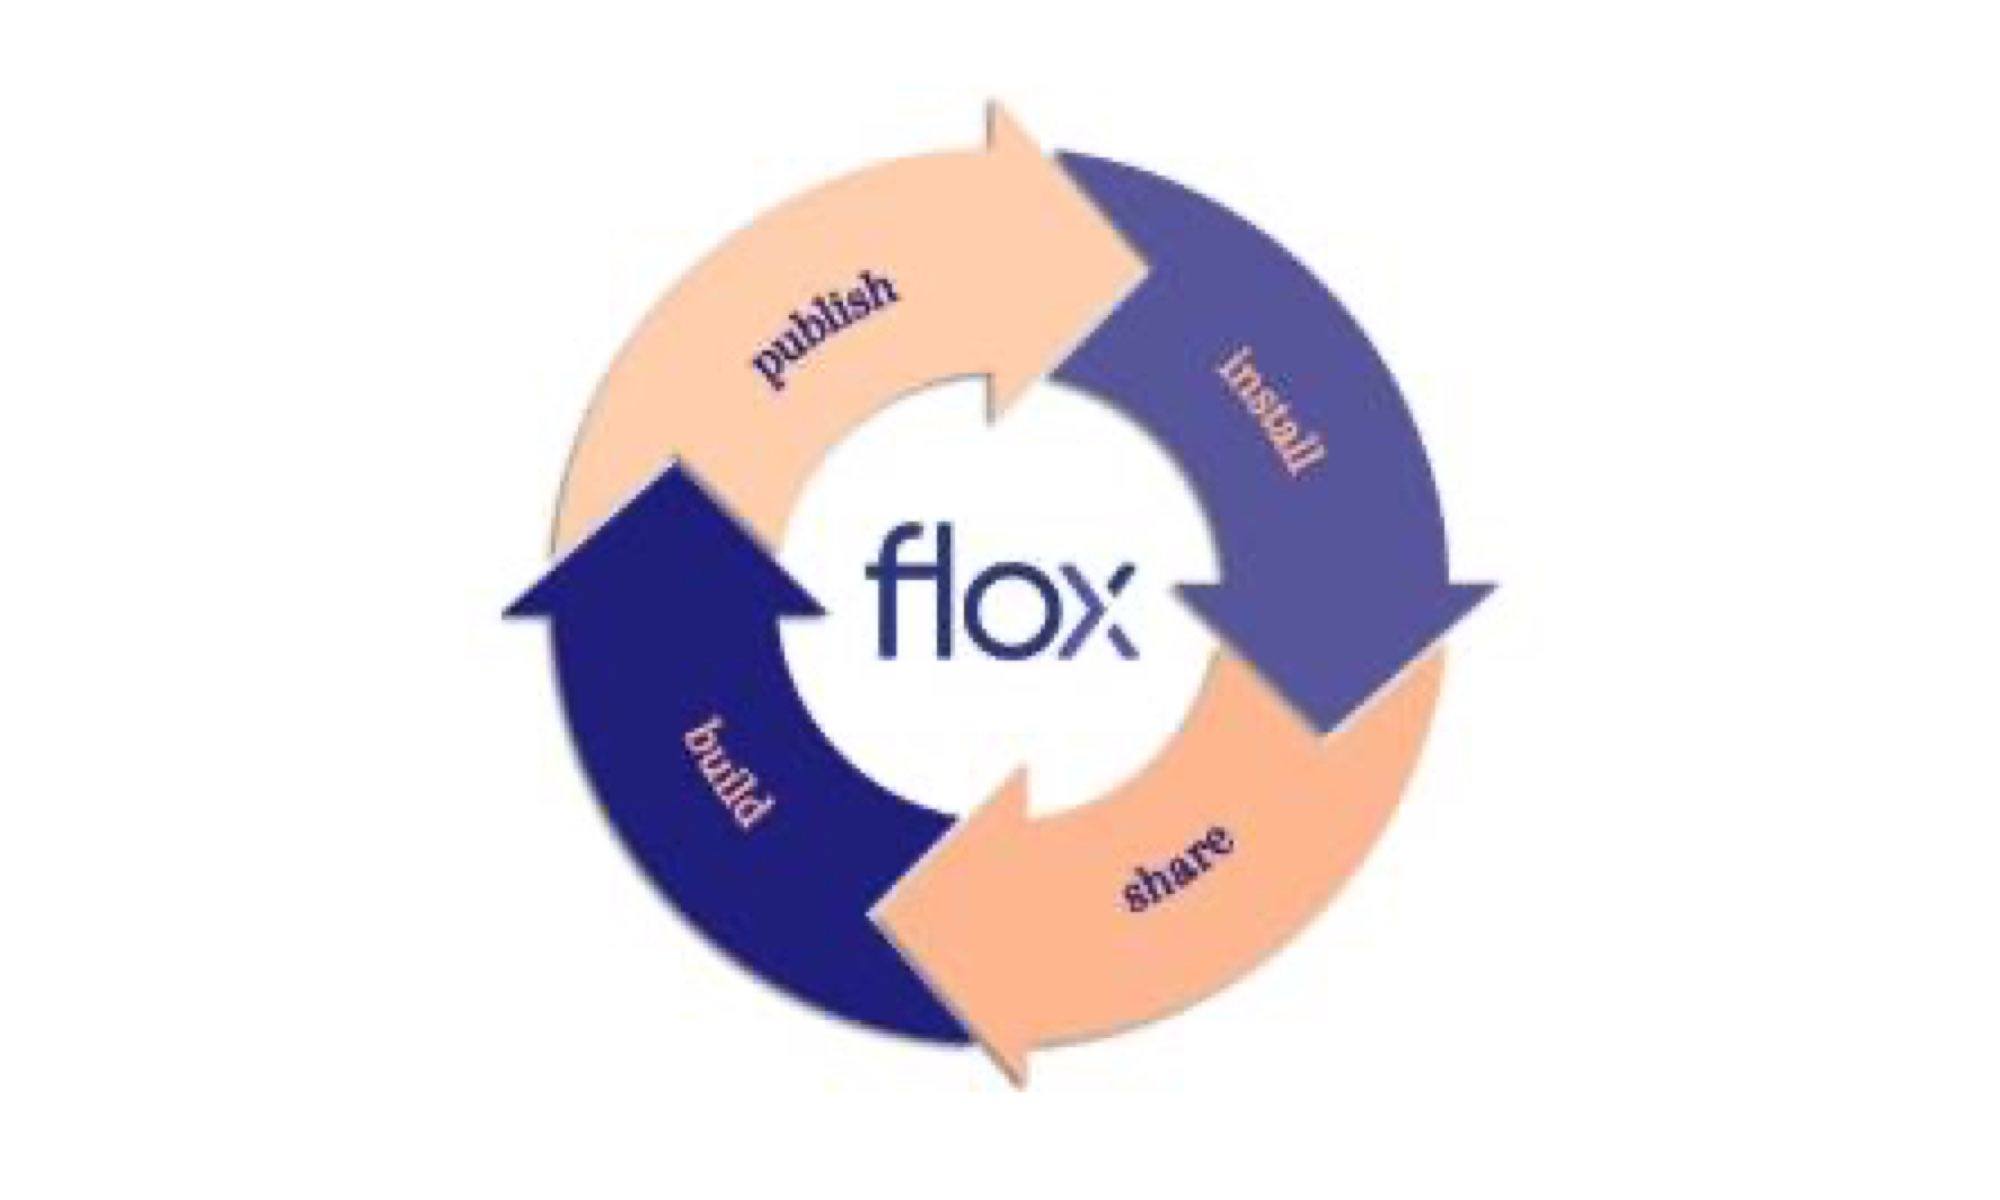 flox - Bringing Nix to Work